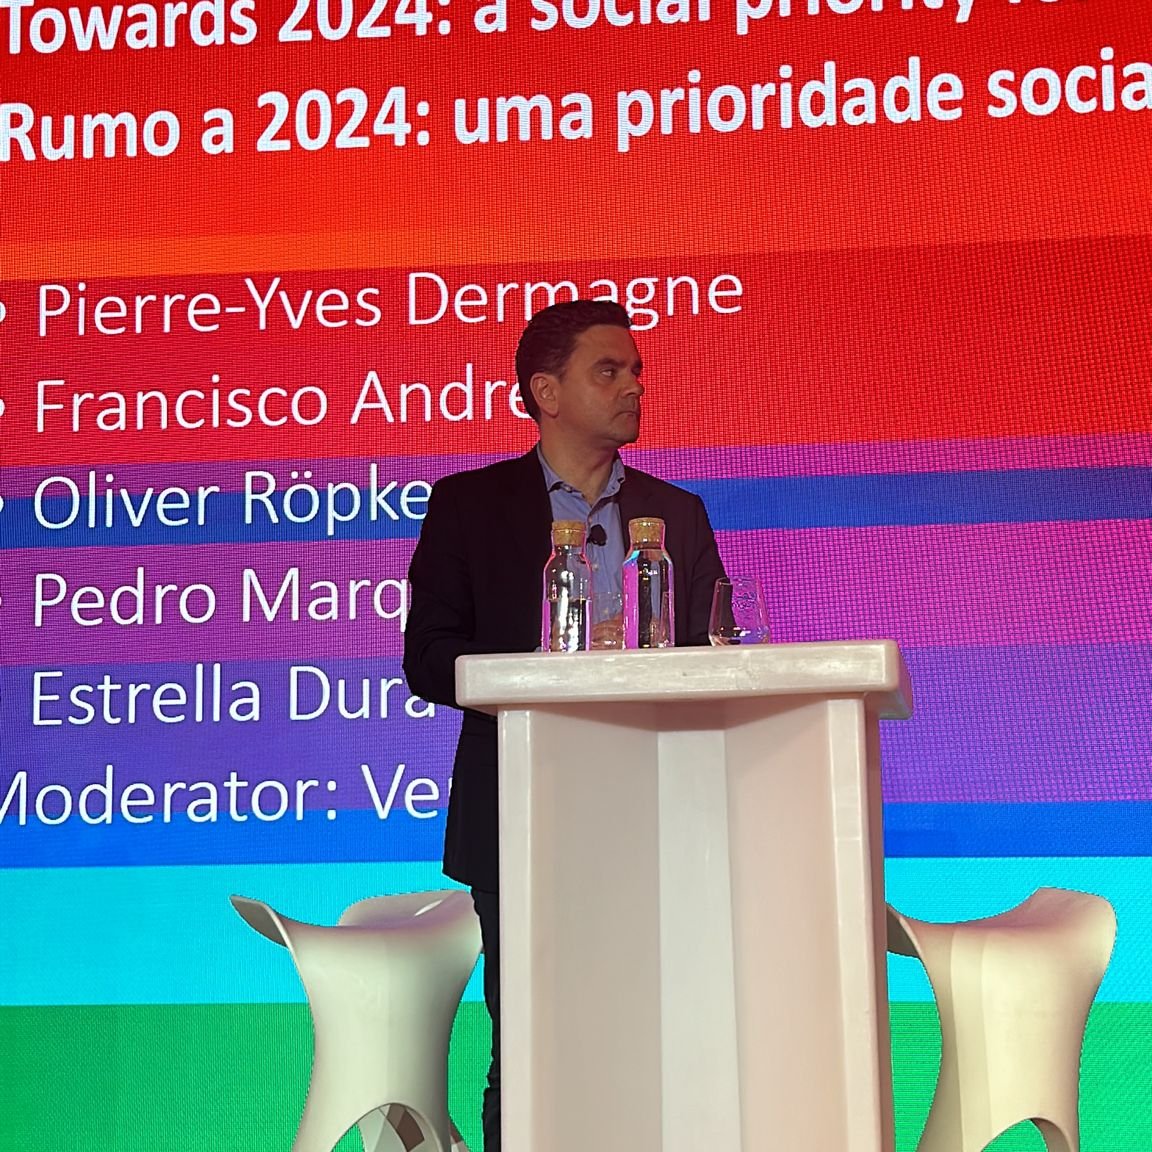 ✊🏻🇵🇹✊🏻
Cimeira Social do @PES_PSE 
Rumo a 2024 - uma prioridade social para uma Europa mais justa 

#PESsocialsummit